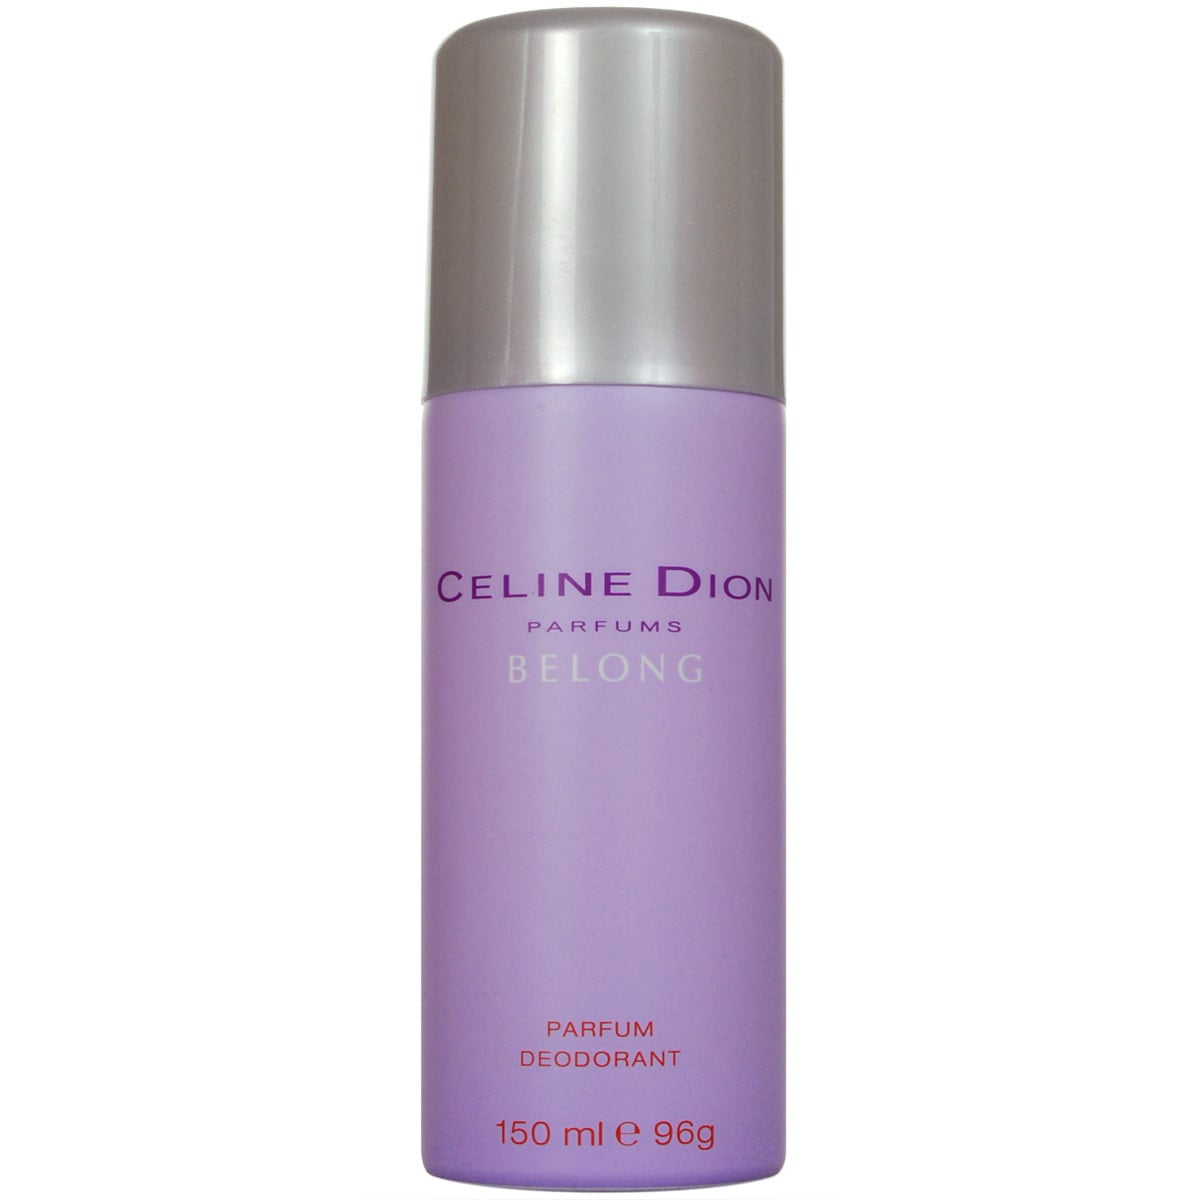 Belong Celine Dion, Parfum Deodorant for Women - Walmart.com